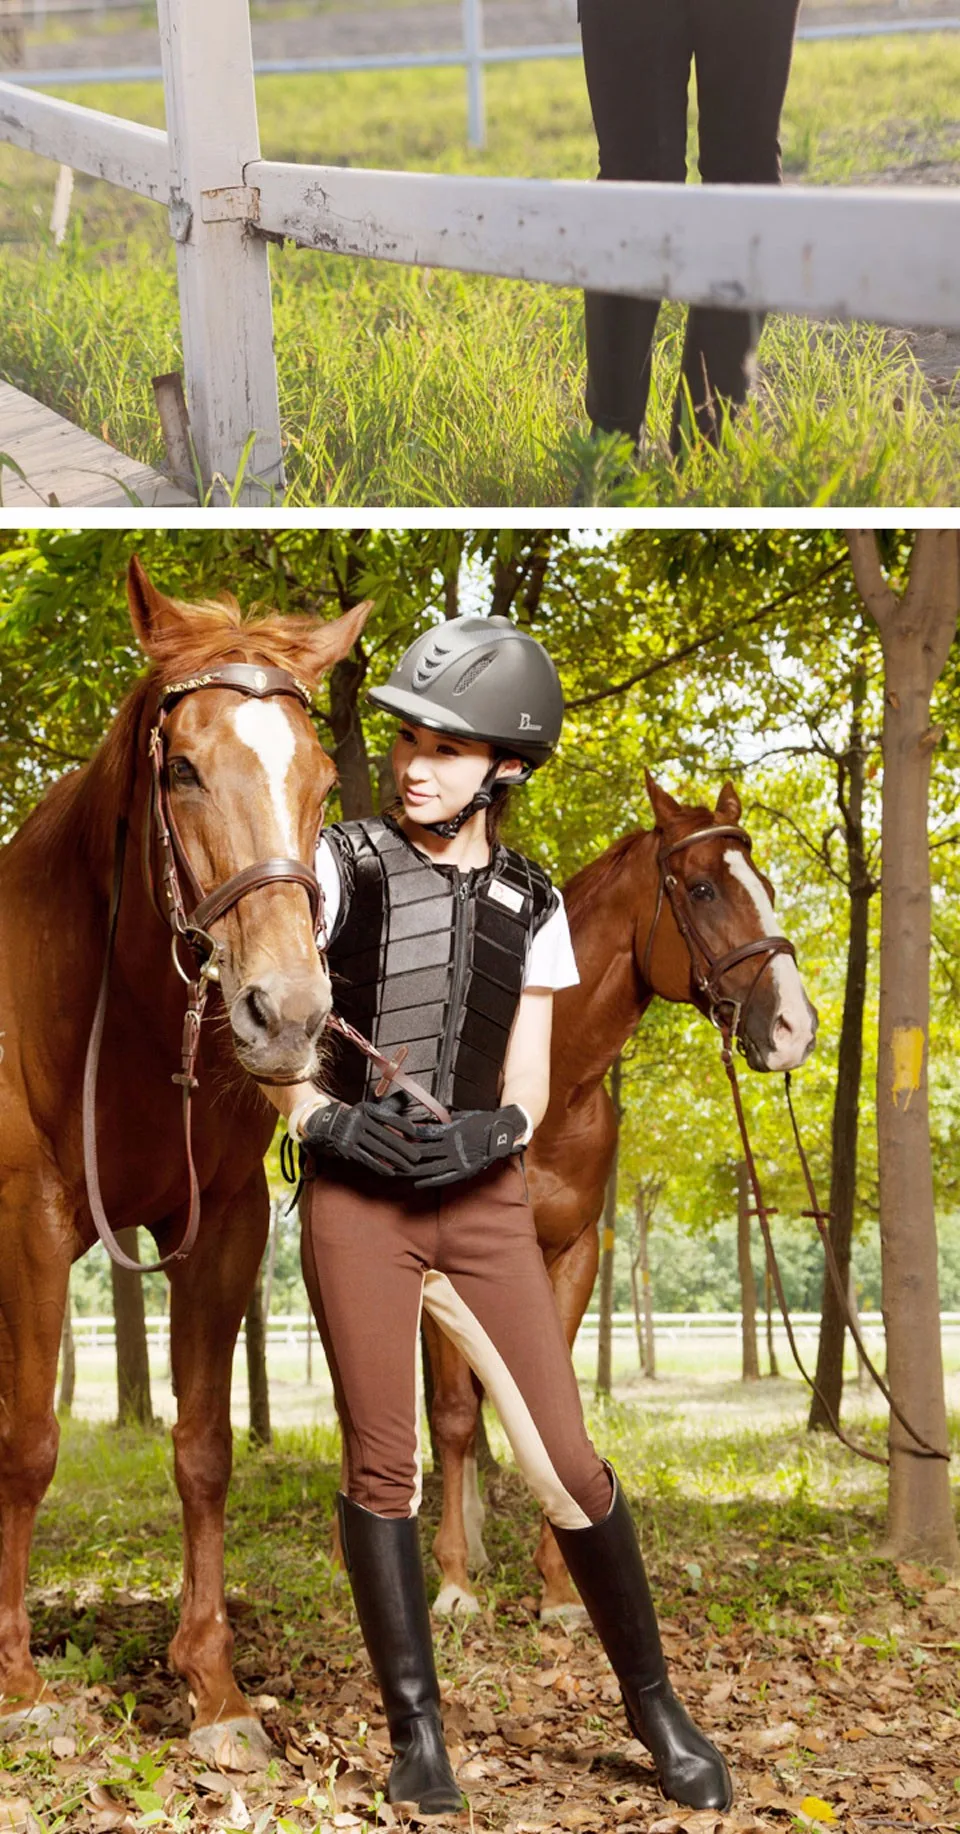 المهنية ركوب الخيل خوذة ل سباق الخيل الفروسية خوذة للرجال النساء و الأطفال horse riding helmet riding helmethelmet for aliexpress